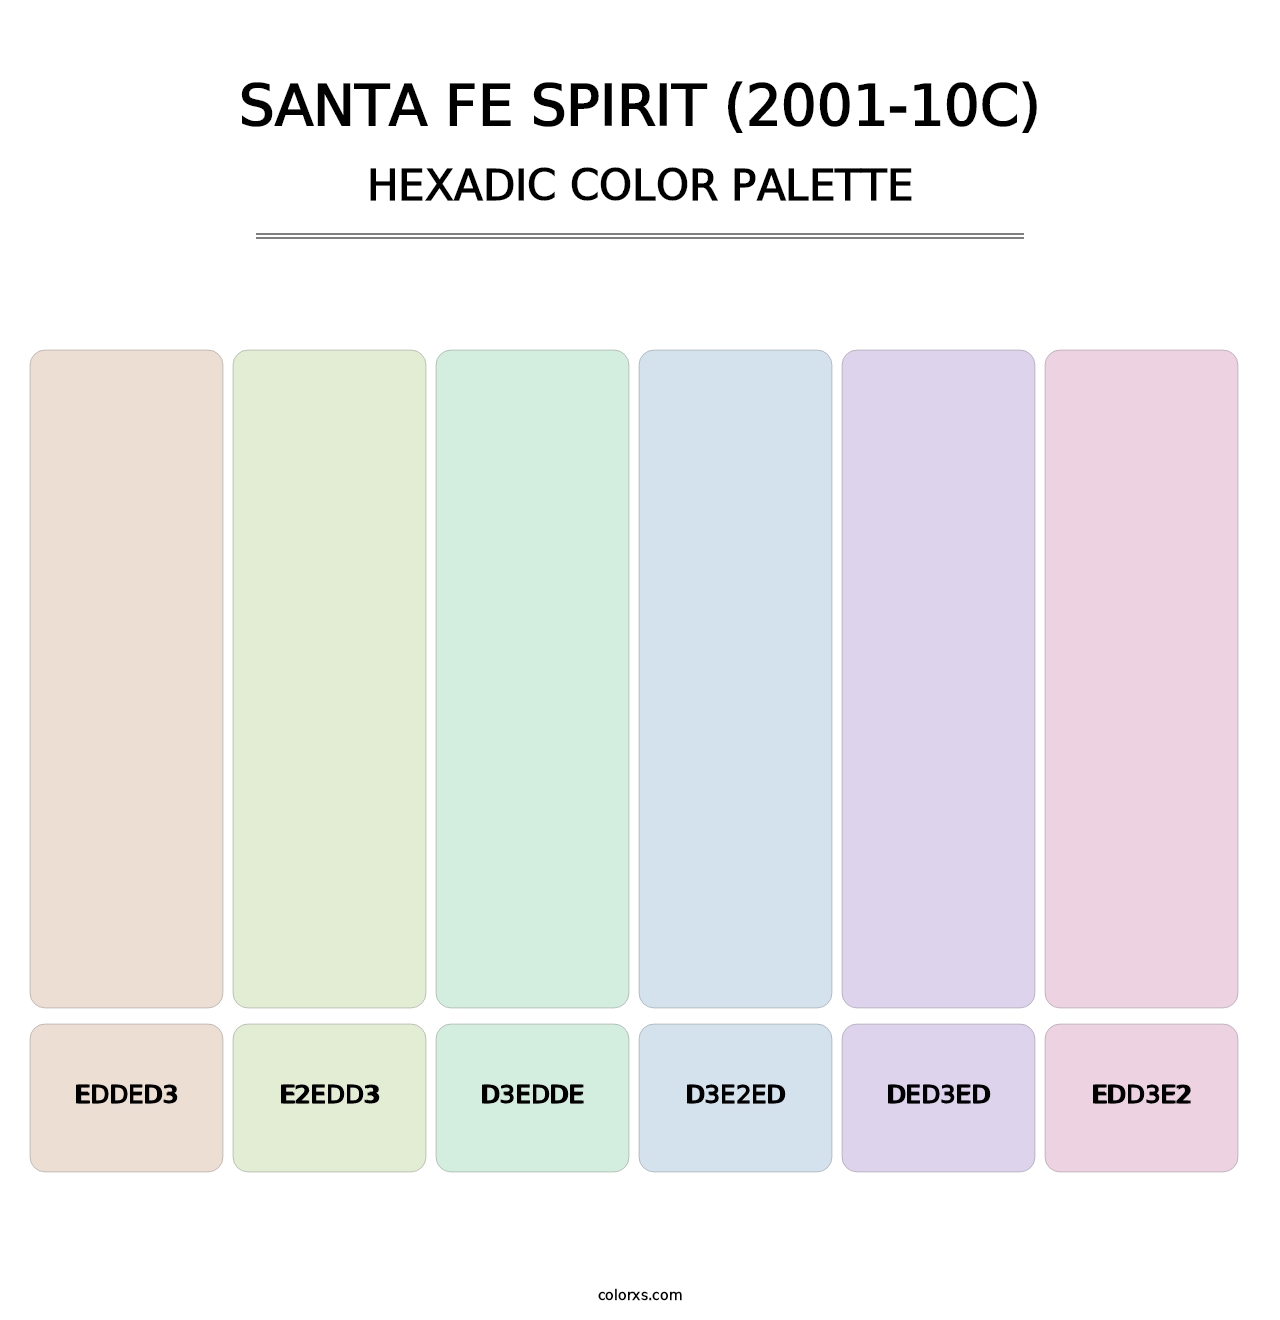 Santa Fe Spirit (2001-10C) - Hexadic Color Palette